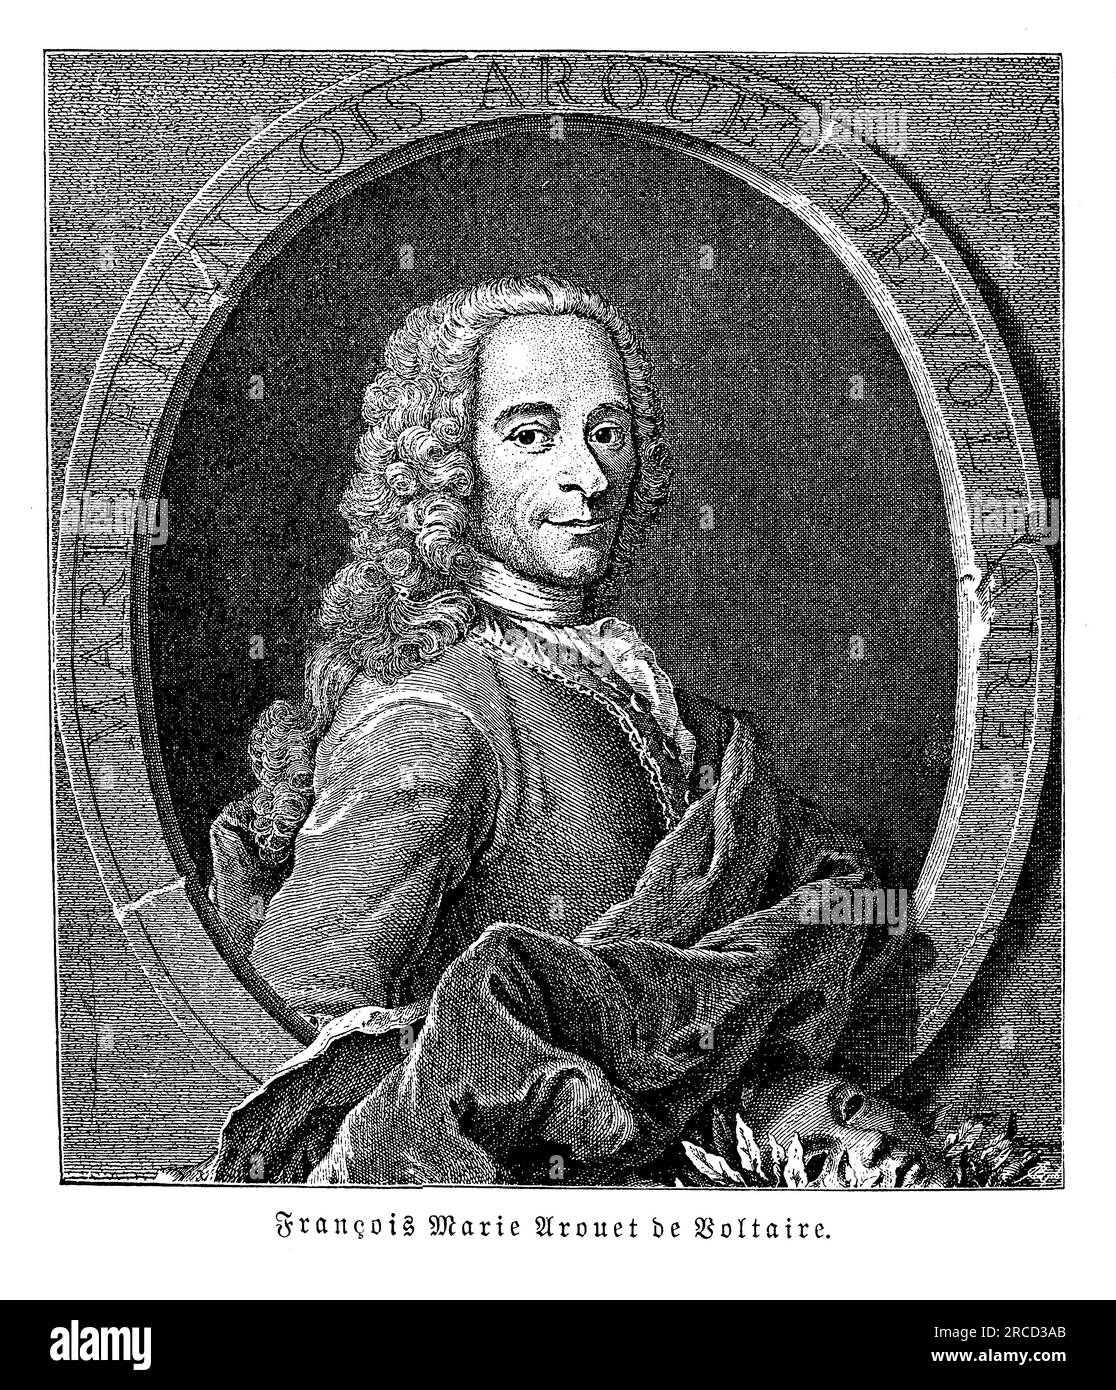 Voltaire, dessen richtiger Name Francois-Marie Arouet war, war während der Aufklärungszeit ein prominenter französischer Philosoph, Schriftsteller und Intellektueller. Er wurde am 21. November 1694 geboren und ist bekannt für seinen Witz, seine Satire und sein Eintreten für bürgerliche Freiheiten, Meinungsfreiheit und religiöse Toleranz. Voltaires Werke, einschließlich Theaterstücke, Poesie, Romane und philosophische Essays, Machte ihn zu einem der einflussreichsten Denker seiner Zeit. Seine berühmte Novelle „Candide“ satierte den Optimismus und die philosophischen Ideen, die während der Epoche vorherrschten. Voltaire war ein scharfer Kritiker sozialer und politischer Ungerechtigkeiten, Stockfoto